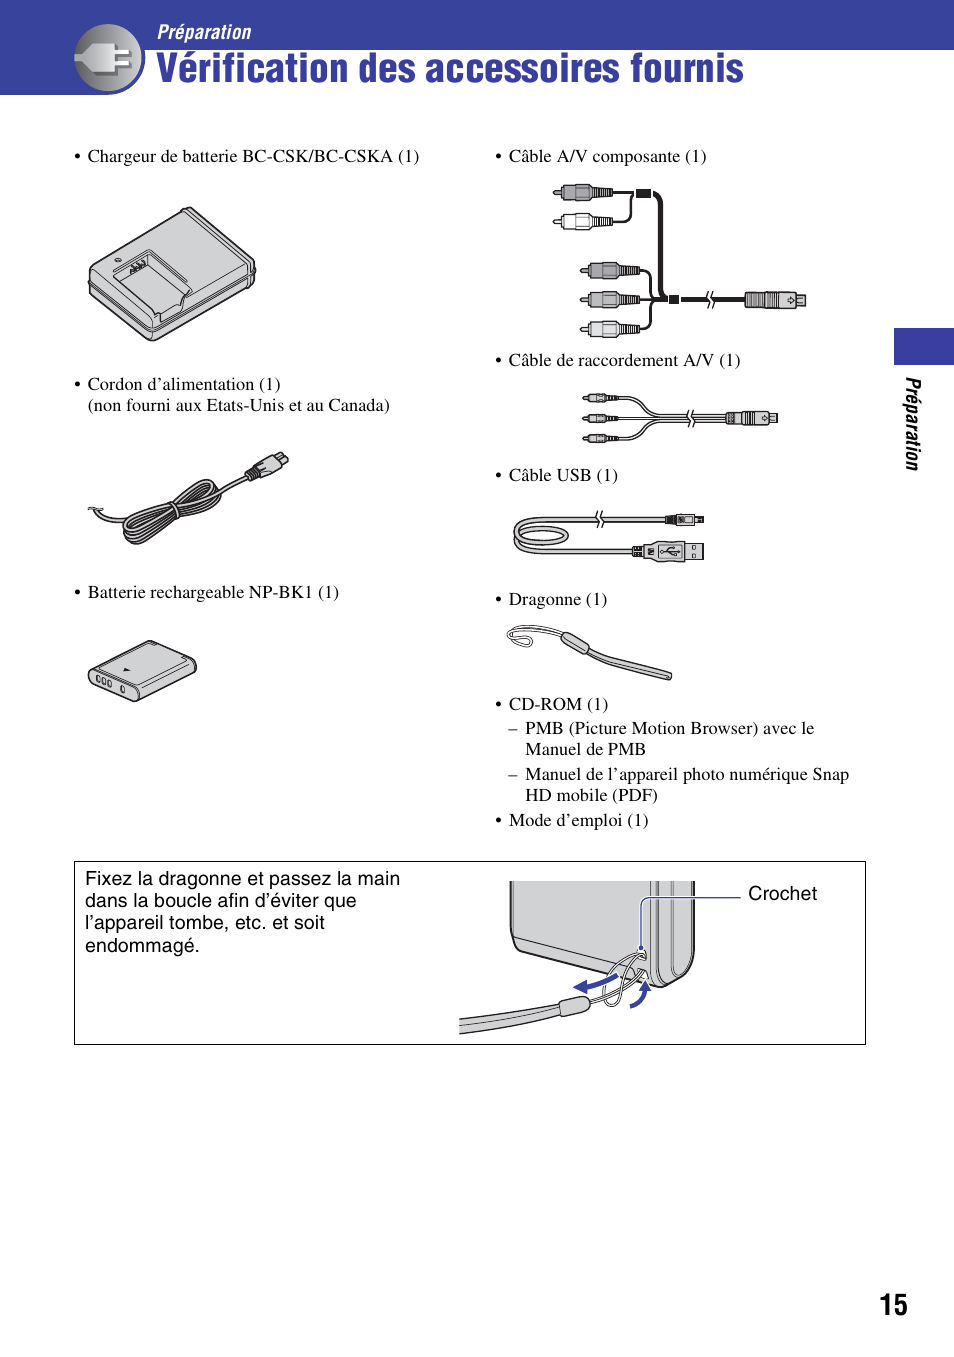 Vérification des accessoires fournis, Préparation | Sony bloggie  MHS-PM1 Manuel d'utilisation | Page 15 / 75